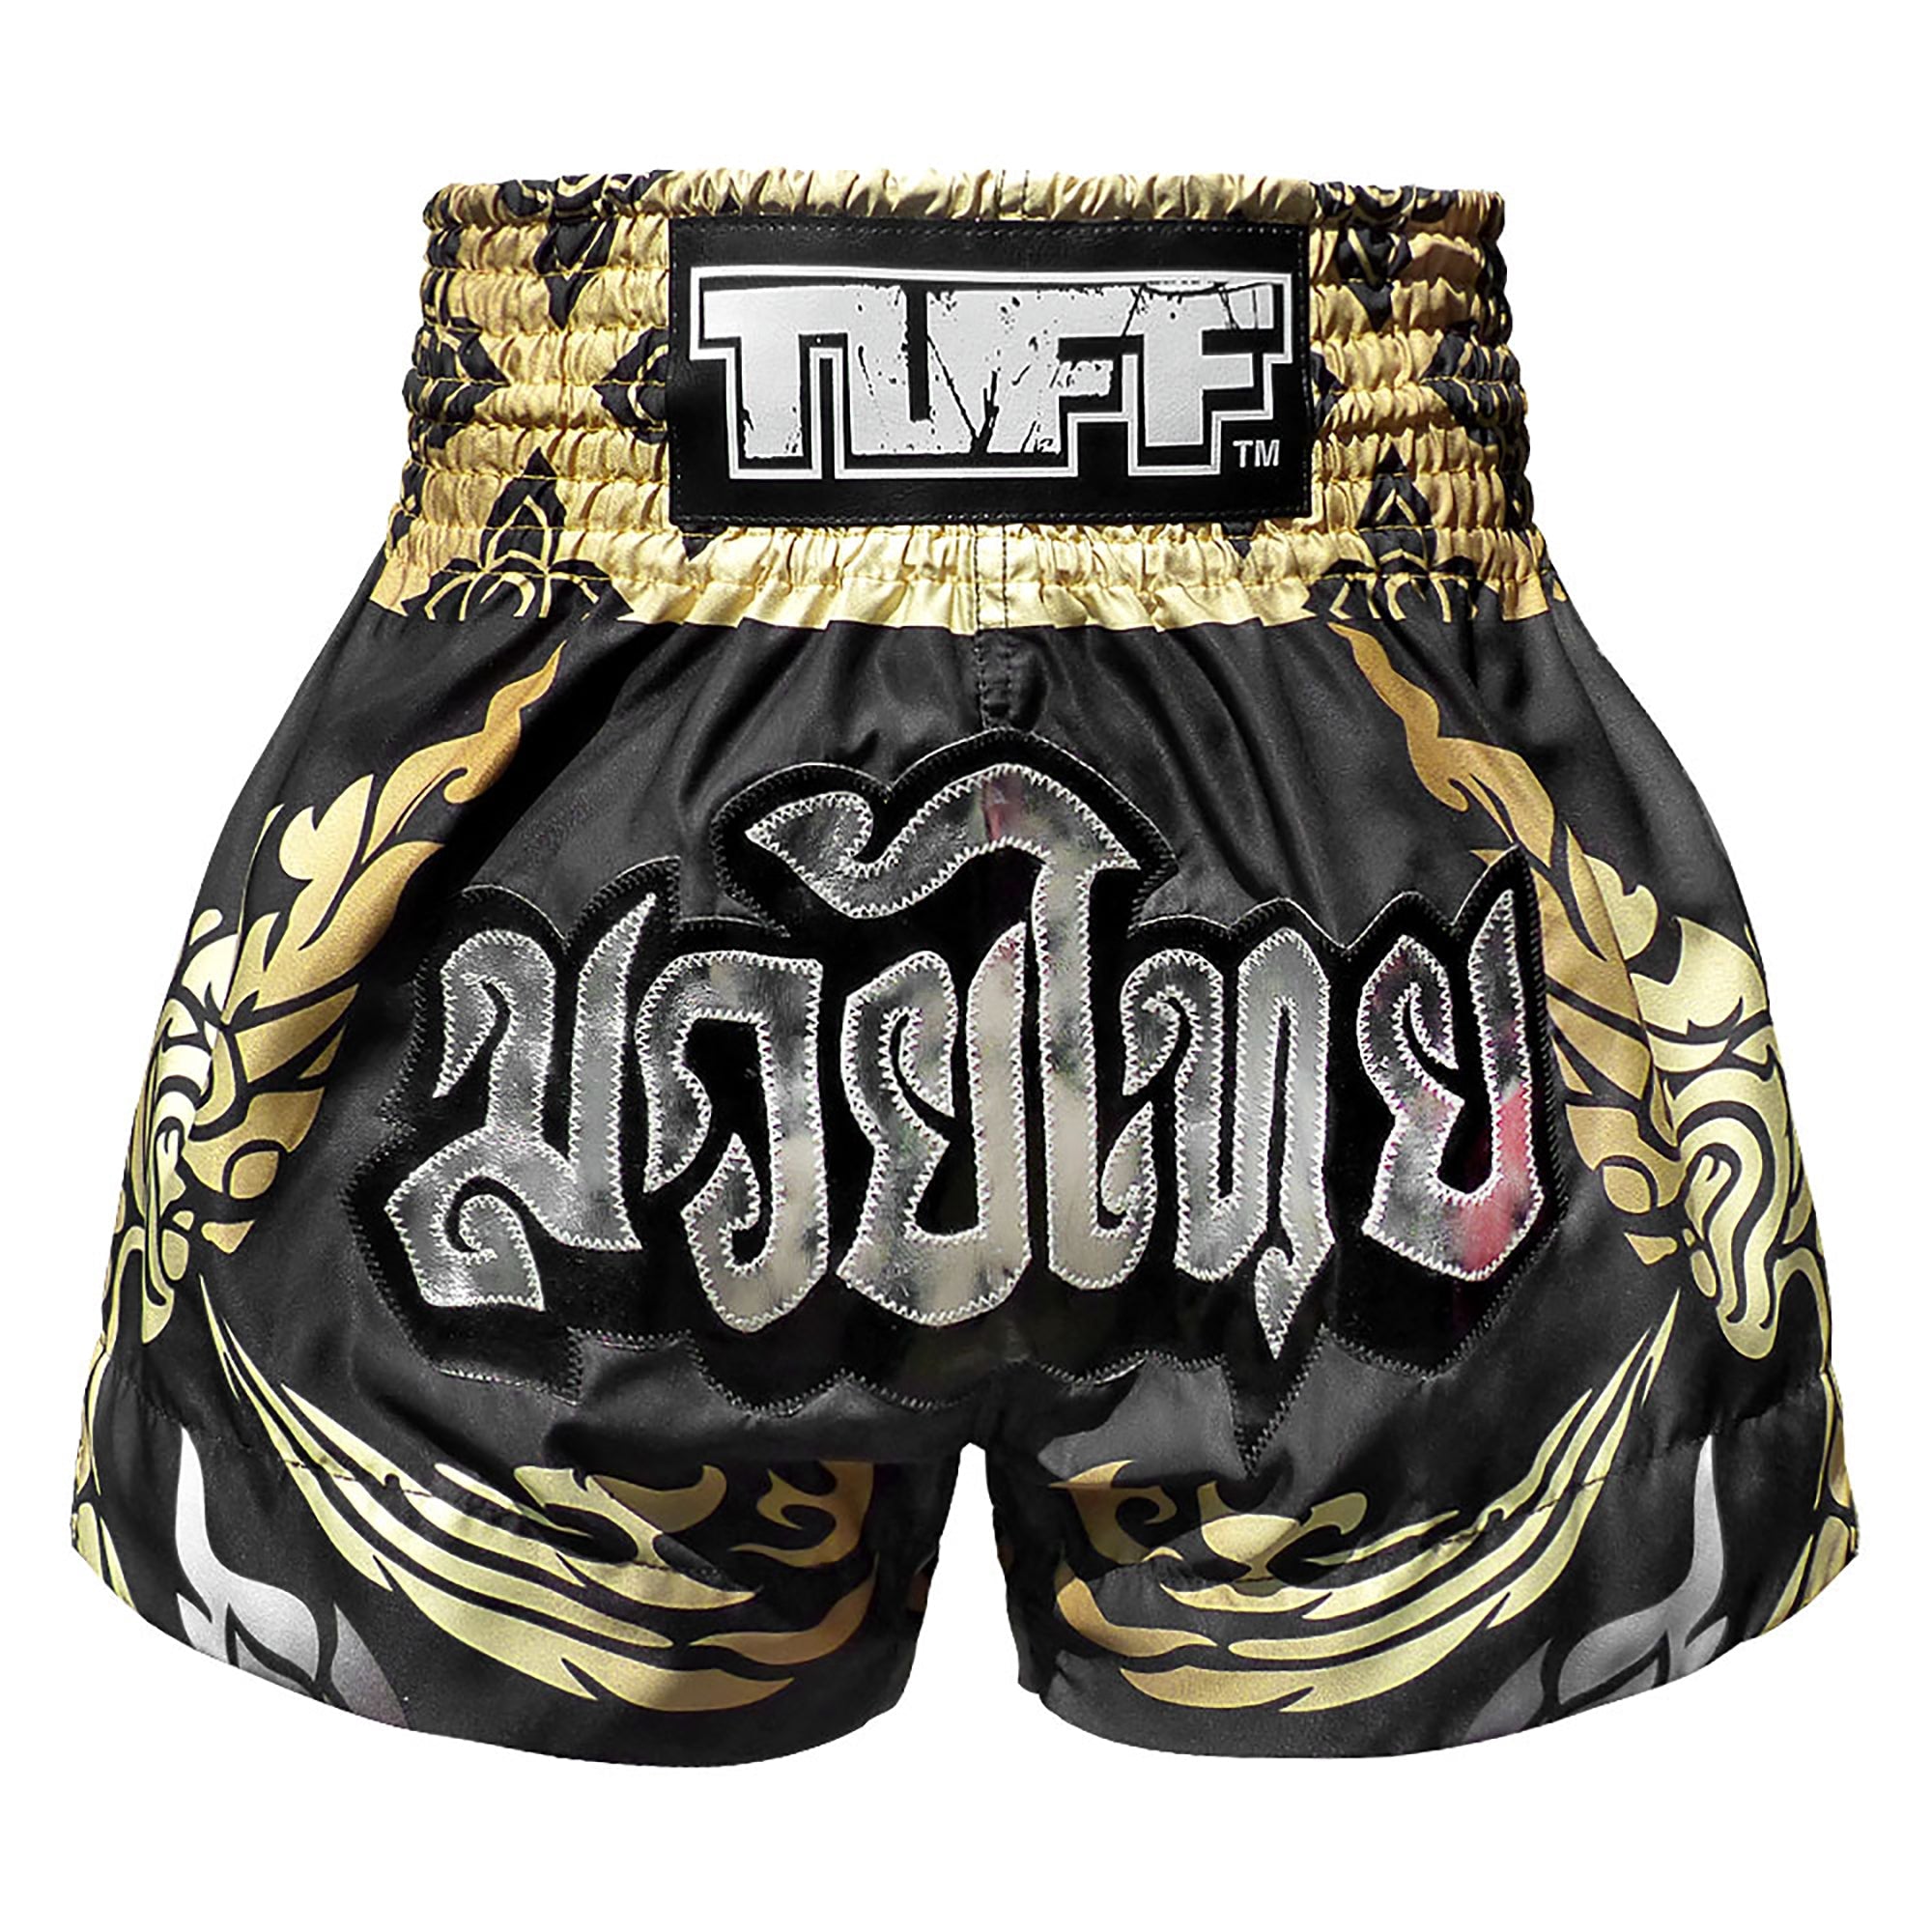 Шорты муай. Шорты для тайского бокса Top King. Тайские шорты Tuff. Майка для тайского бокса фирмы Tuff. Тайские шорты Fairtex.